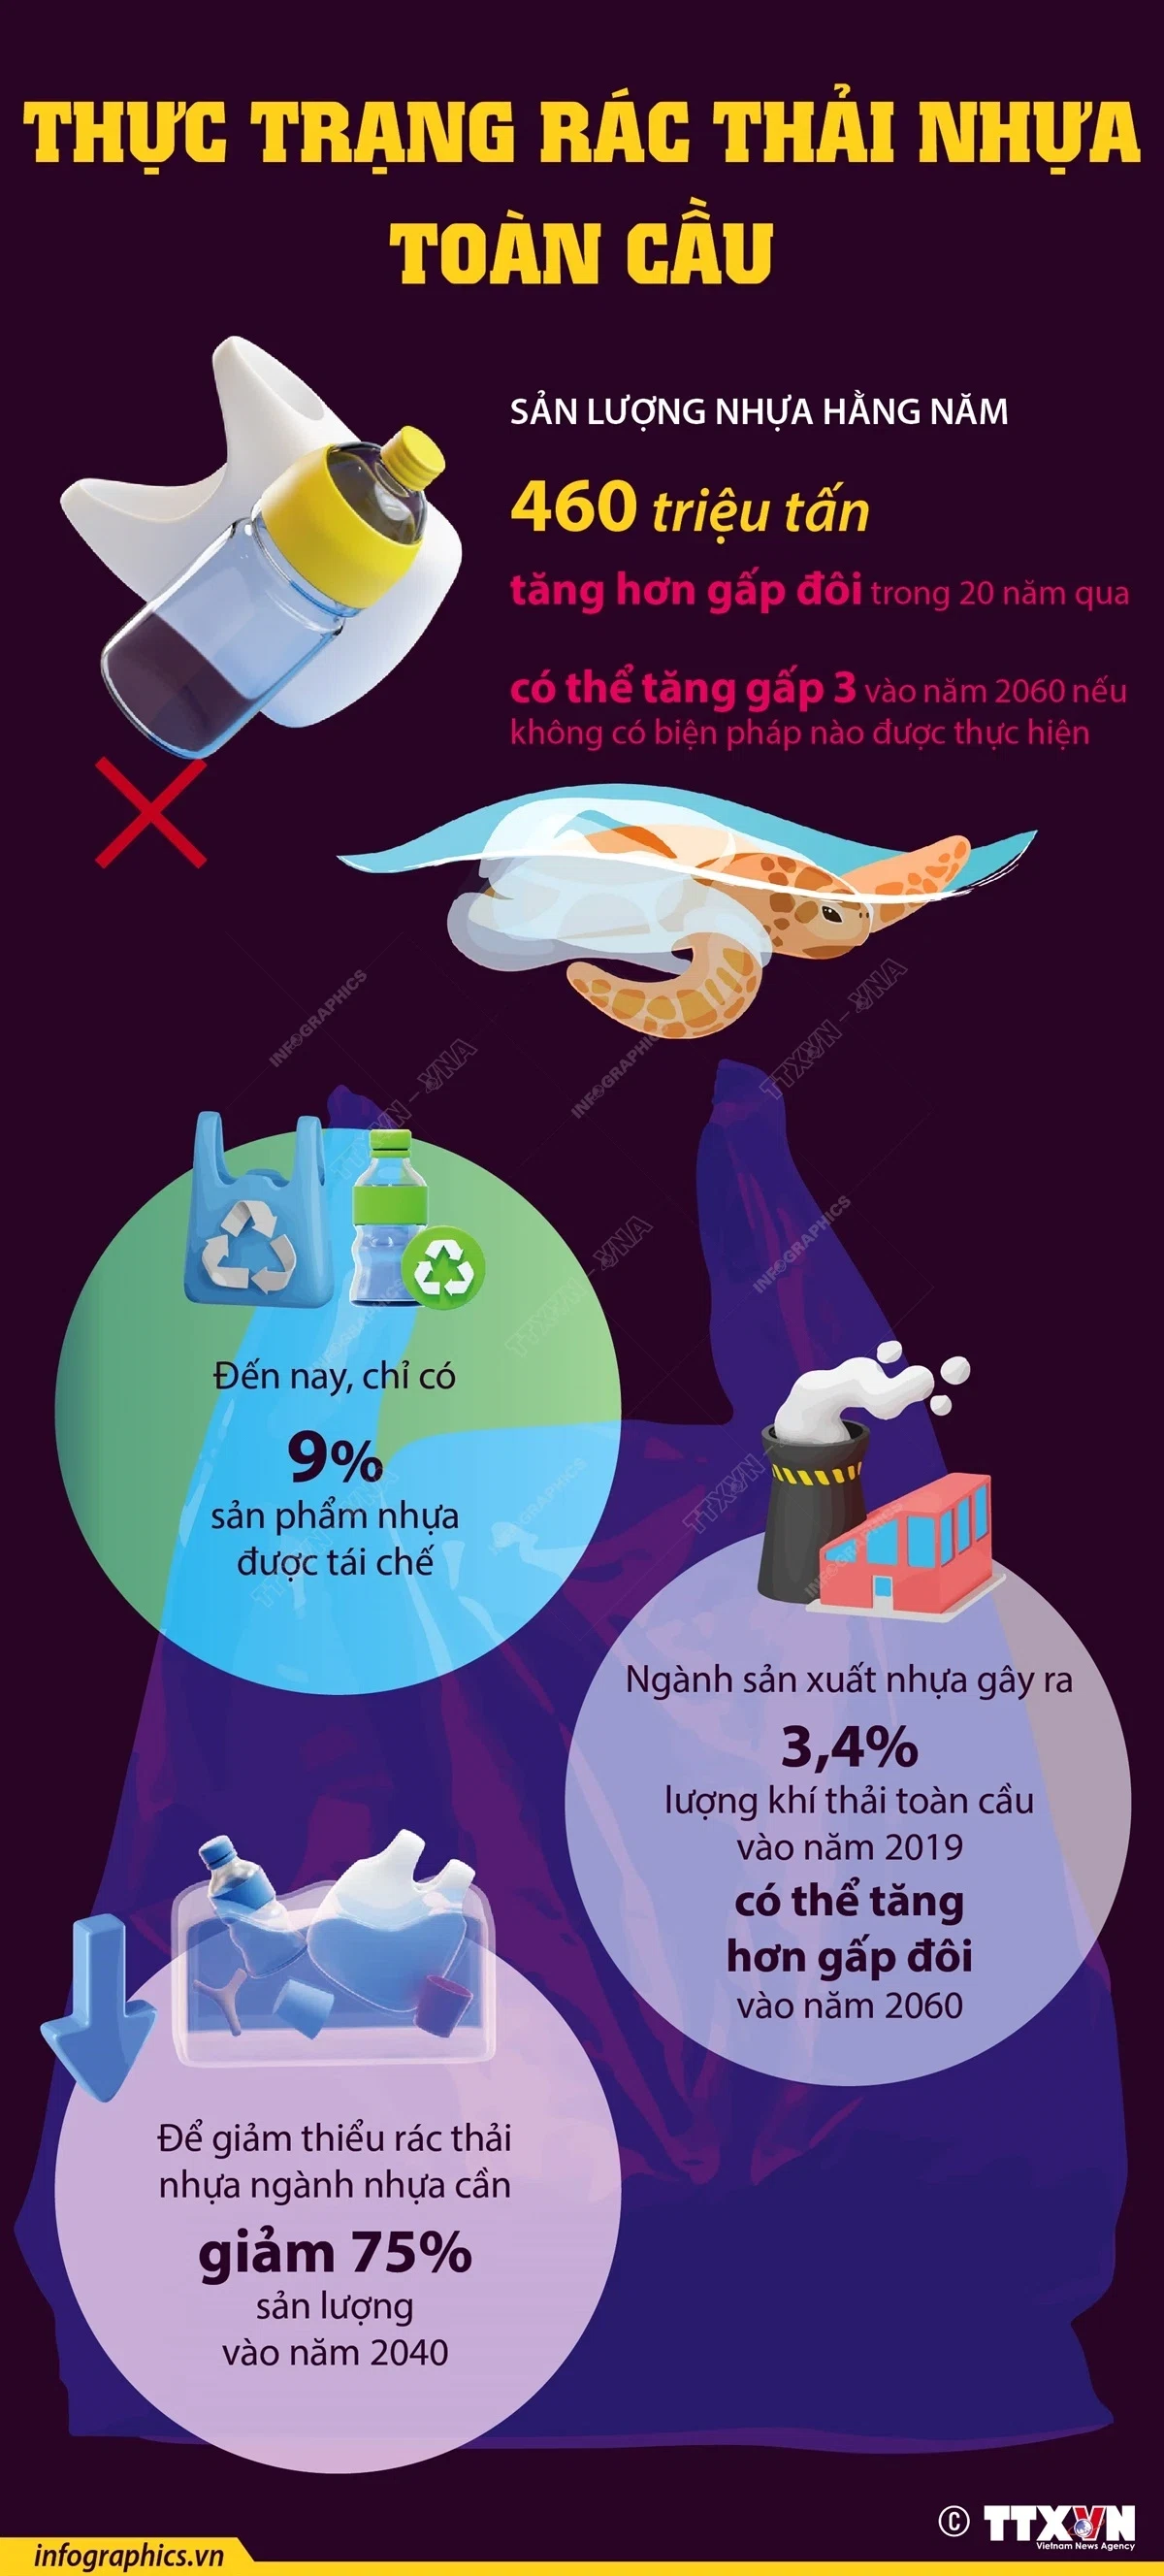 Rác thải nhựa toàn cầu có nguy cơ tăng gấp 3 lần vào năm 2060